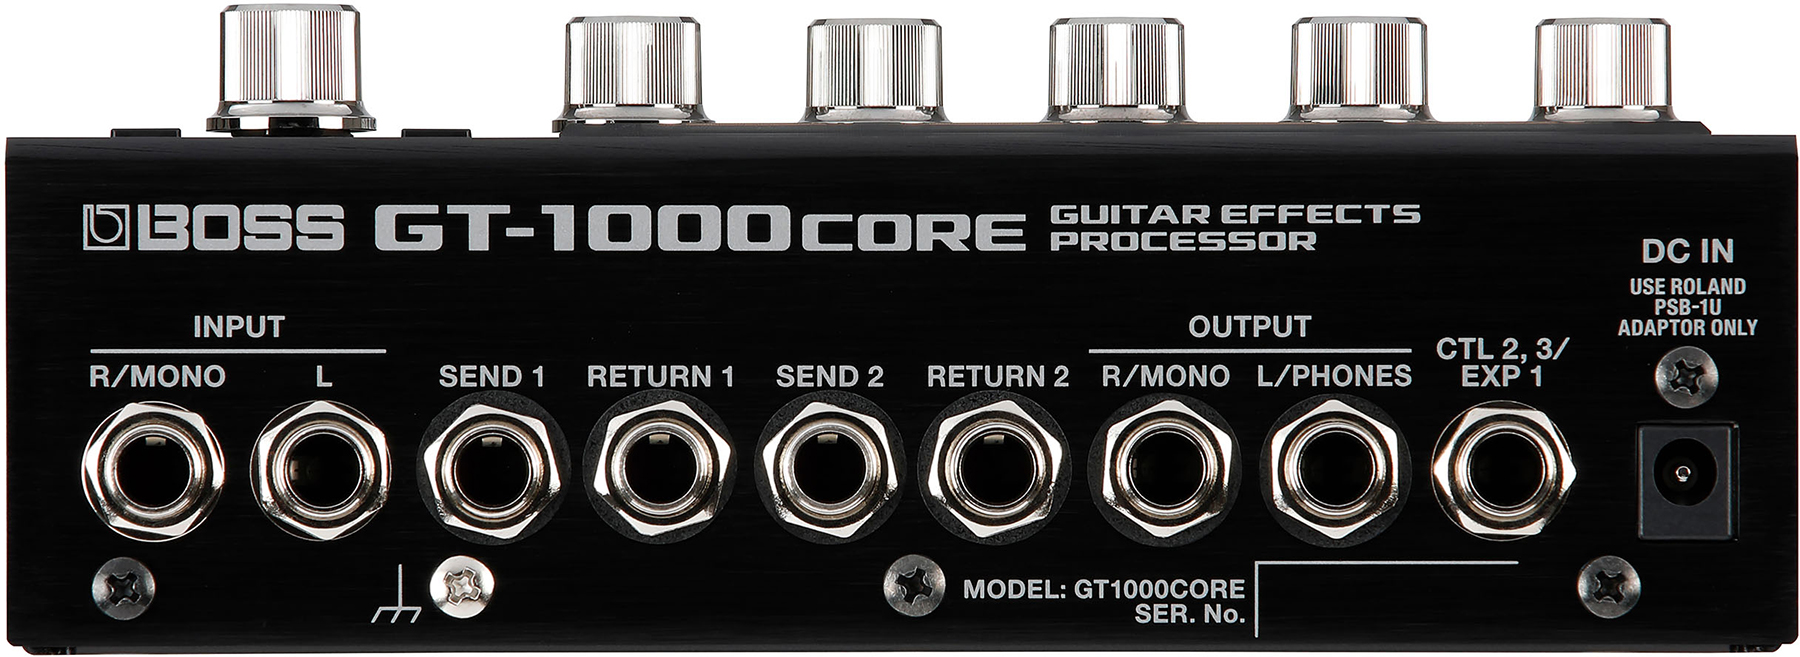 Boss Gt1000core Guitar Effects Processor - Simulatie van gitaarversterkermodellering - Variation 1